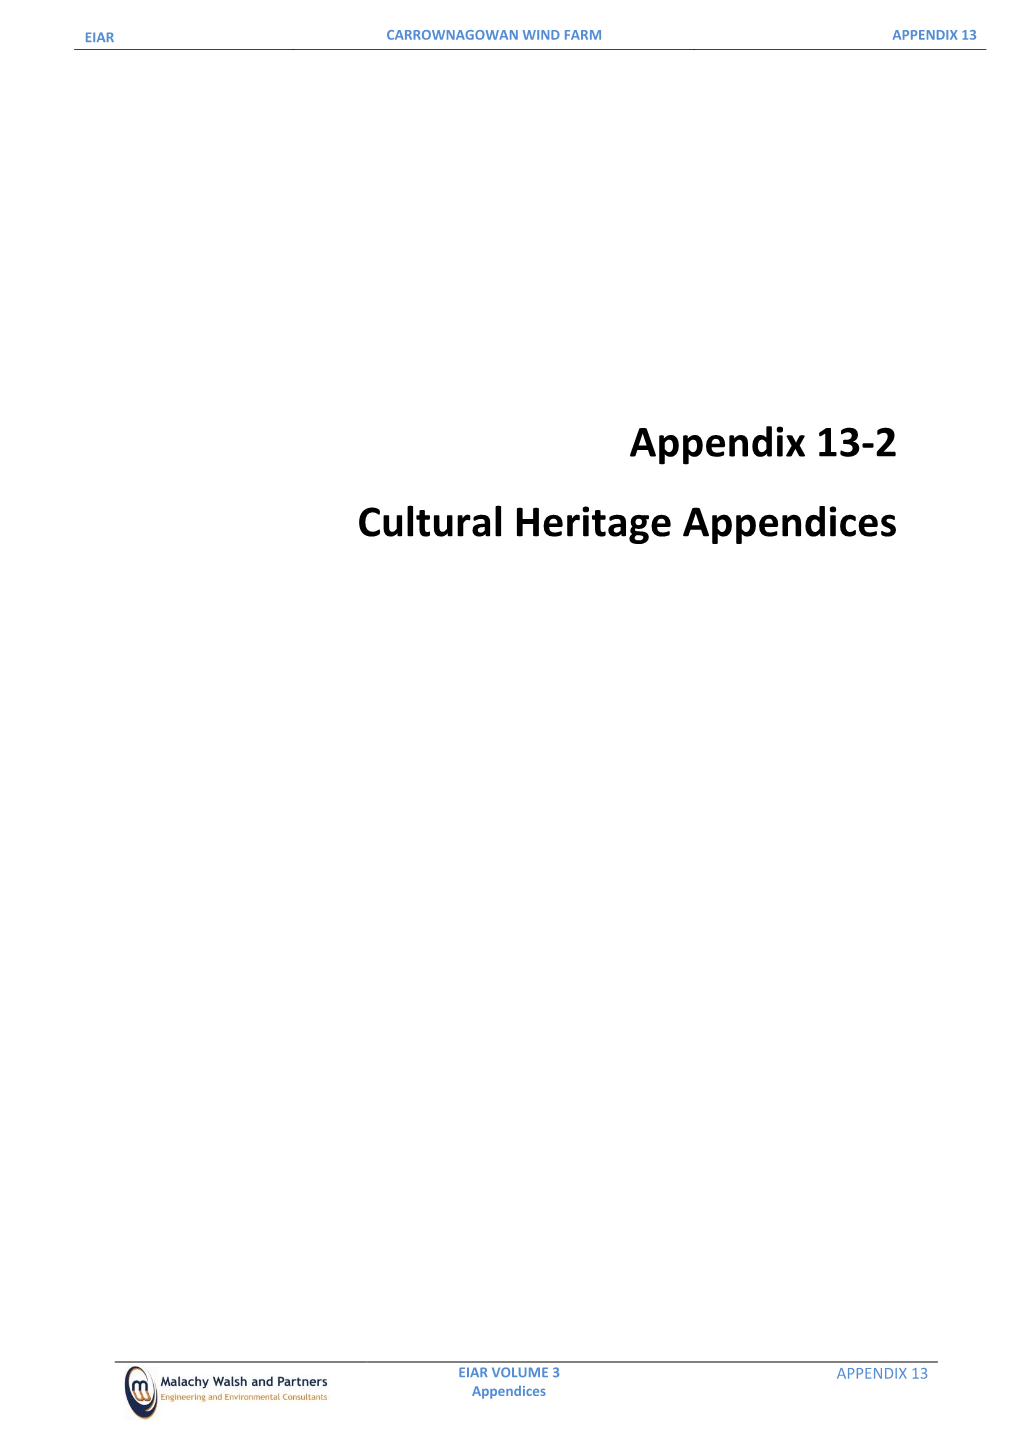 Appendix 13-2 Cultural Heritage Appendices.Pdf [PDF]